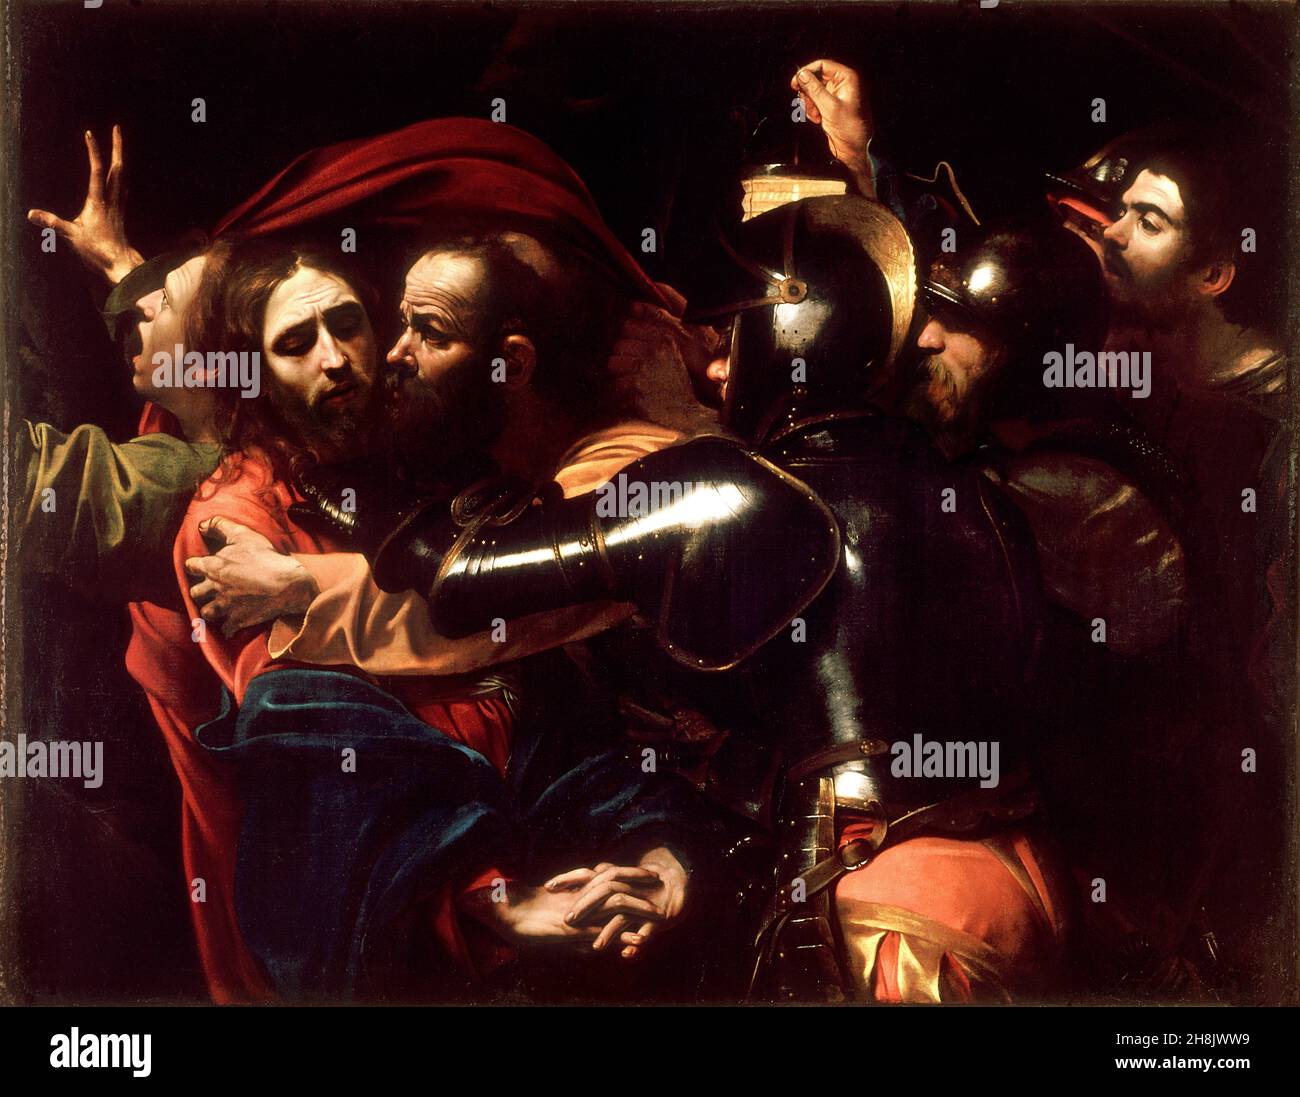 Die Einnahme Christi, 1602, von Caravaggio Stockfoto